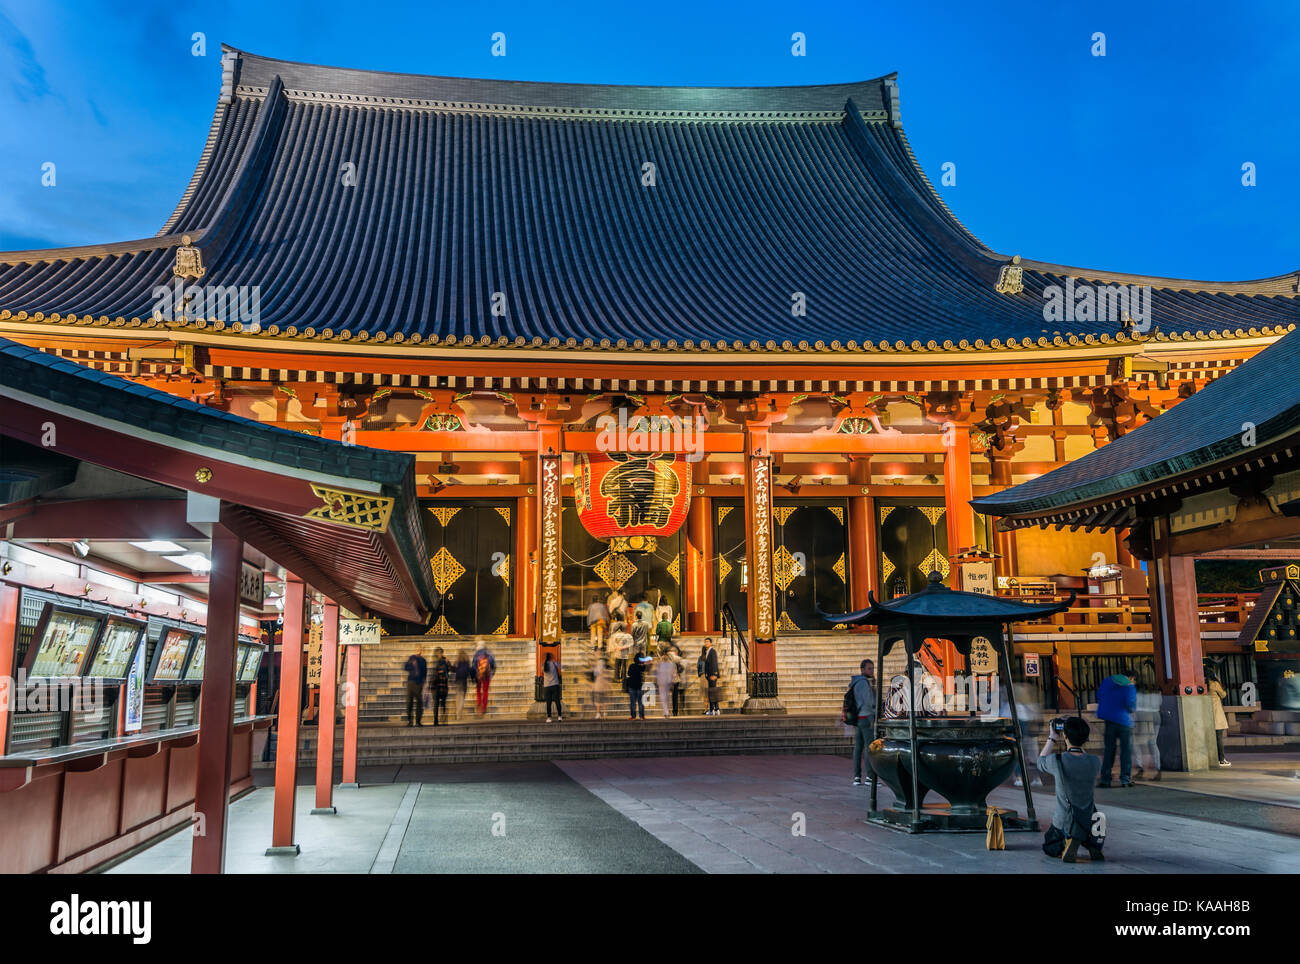 Ancien temple Sensoji de l'époque Edo, également connu sous le nom de Temple Asakusa Kannon, Asakusa, Tokyo, Japon Banque D'Images